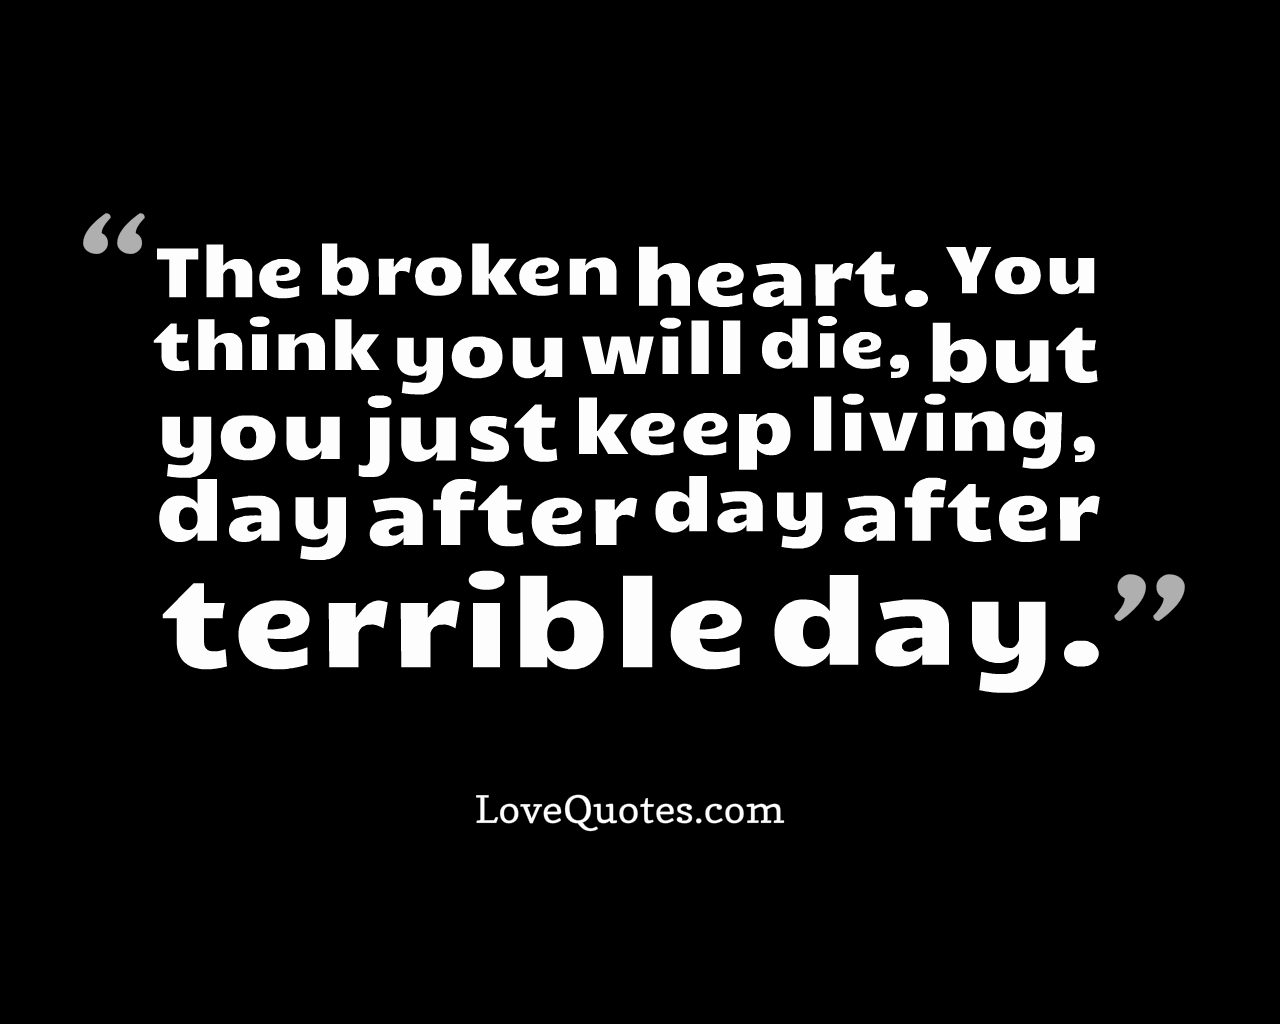 The Broken heart